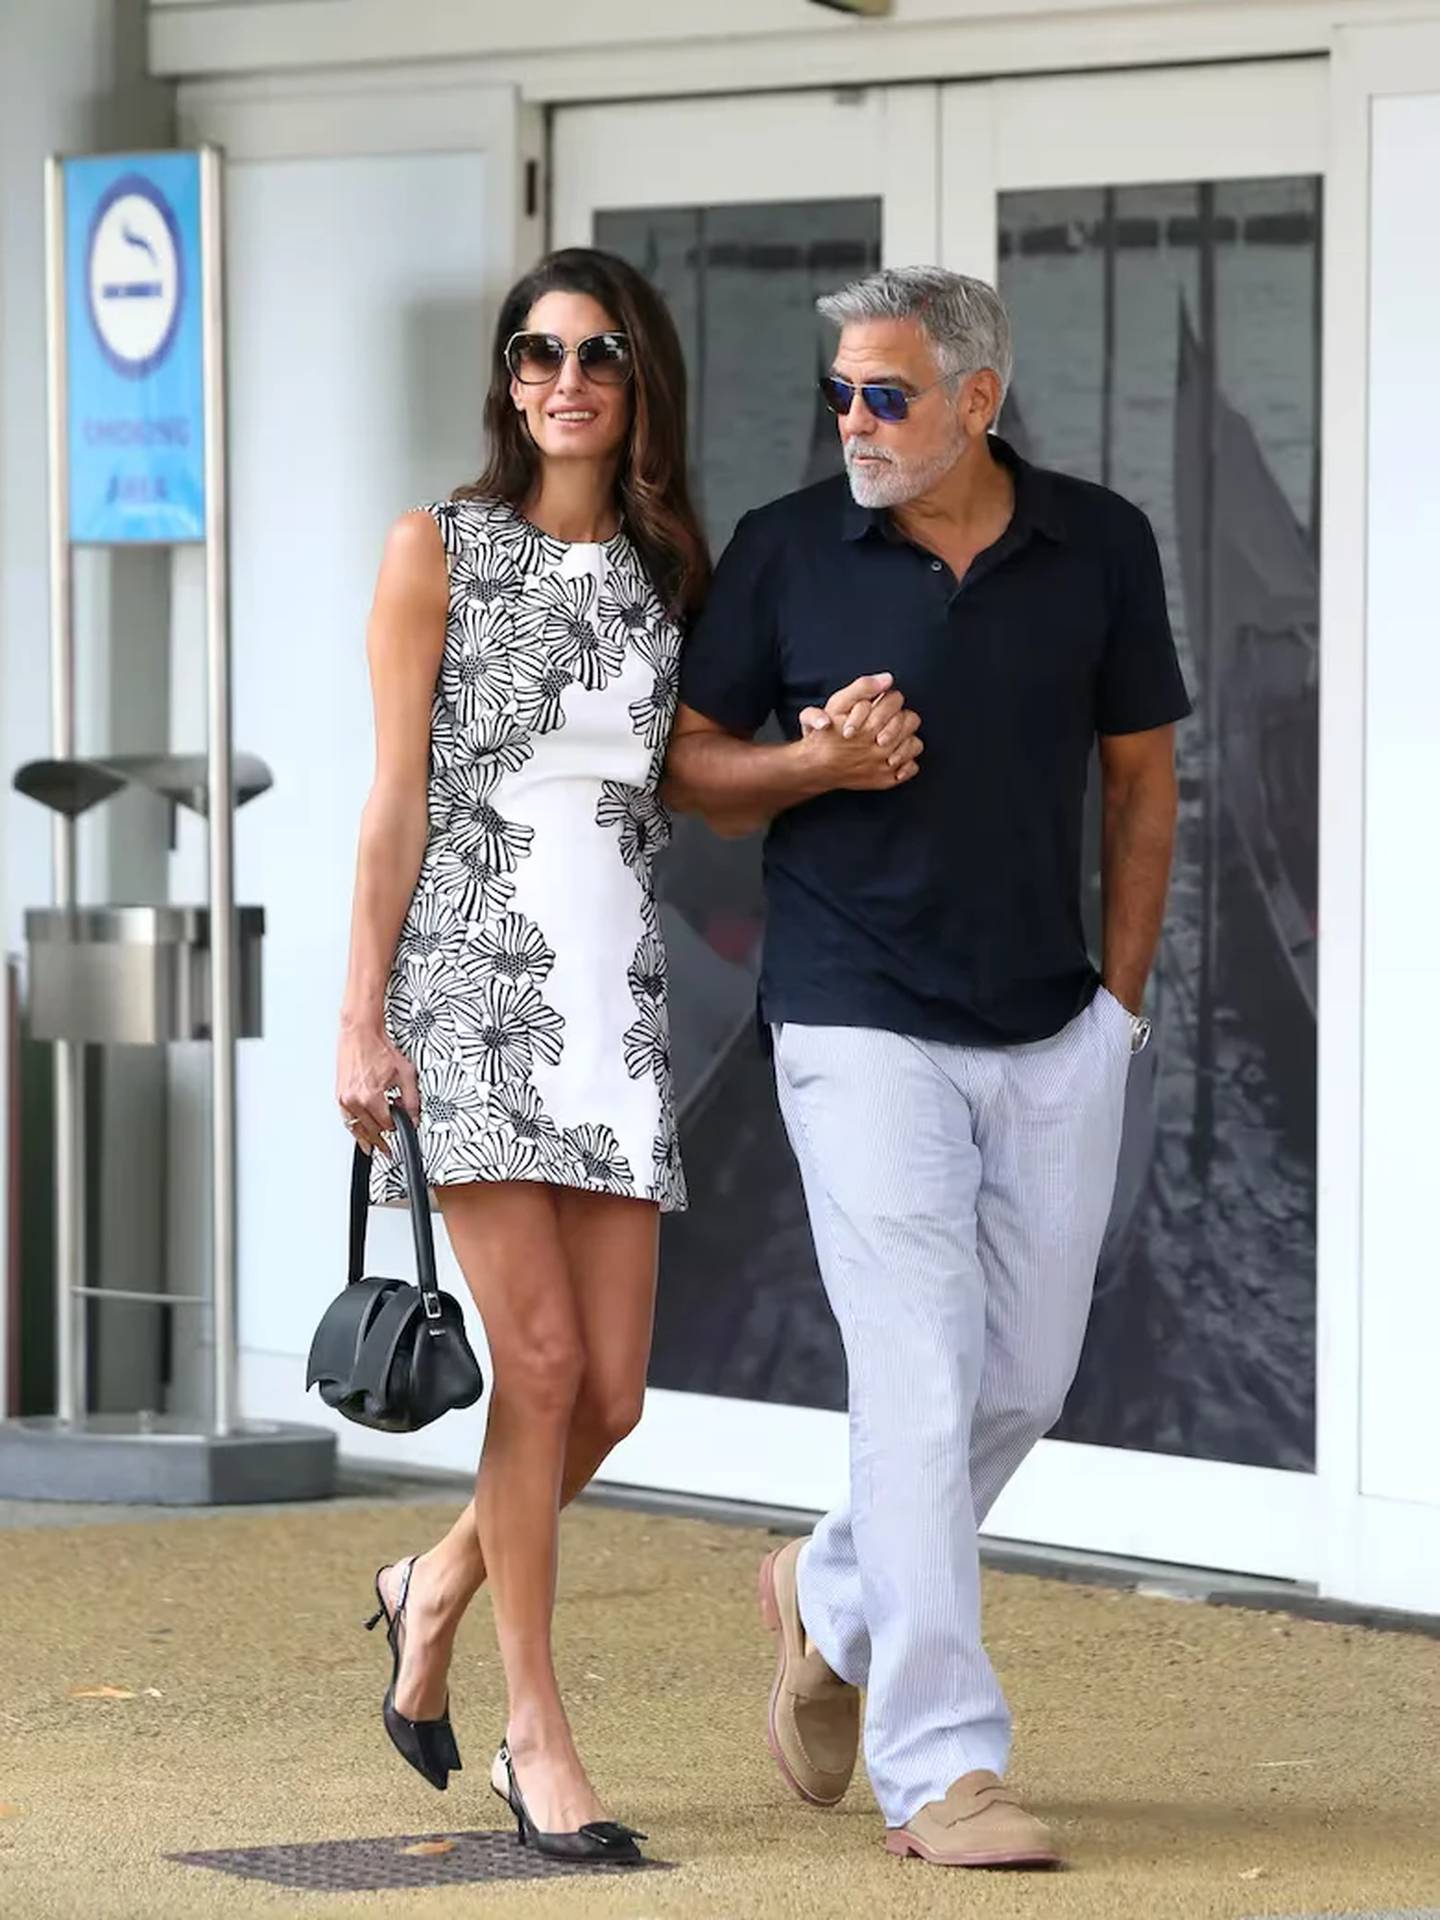 George Clooney y su esposa Amal. Siempre elegantes, George Clooney y su esposa Amal caminaron por Venecia agarrados de la mano y sonrientes ante los flashes
PA Media Group/The Grosby Group.